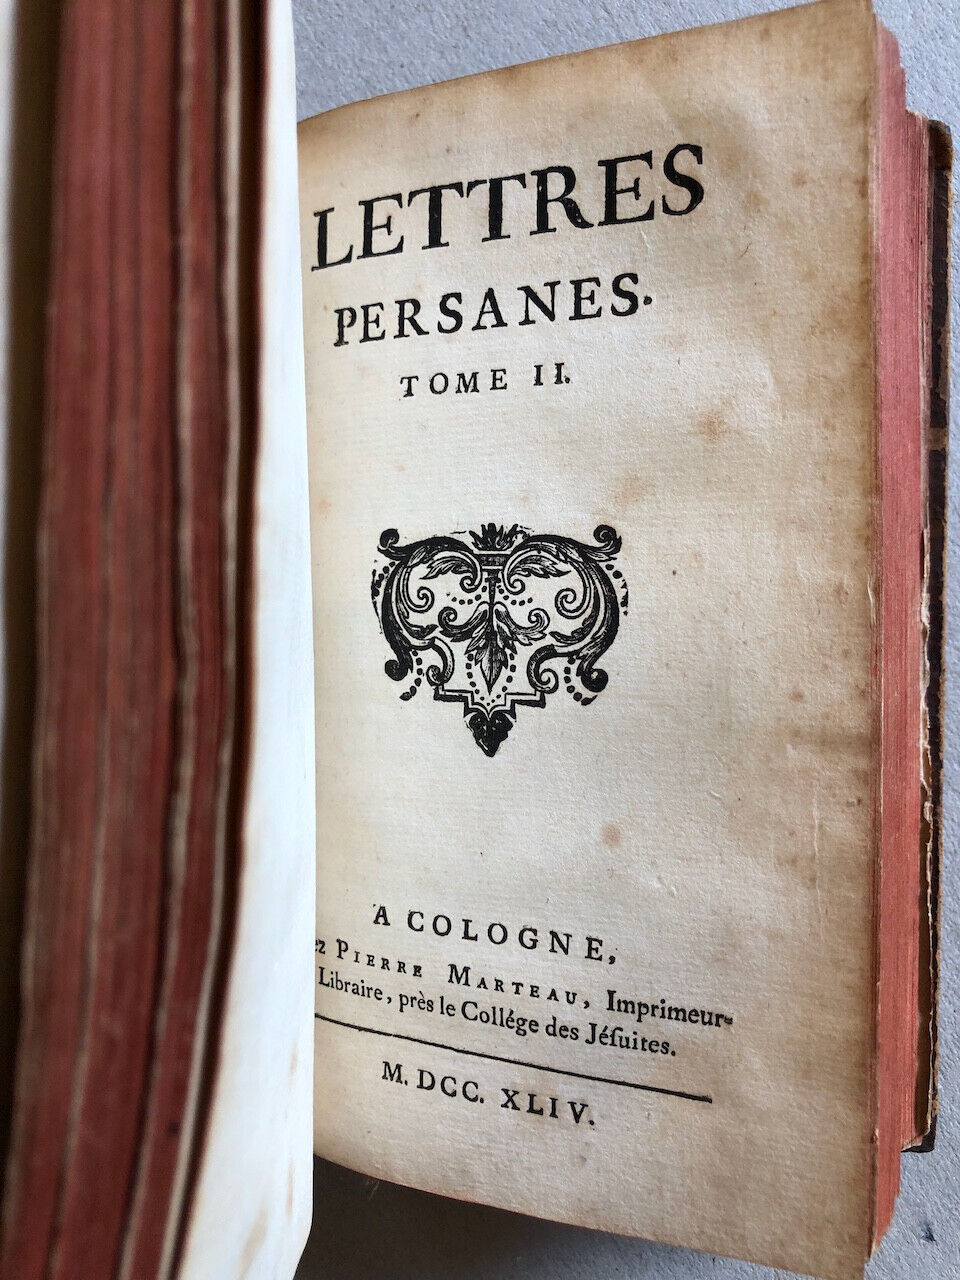 [Montesquieu] — Lettres persanes, relié avec Lettres turques — Marteau — 1744.